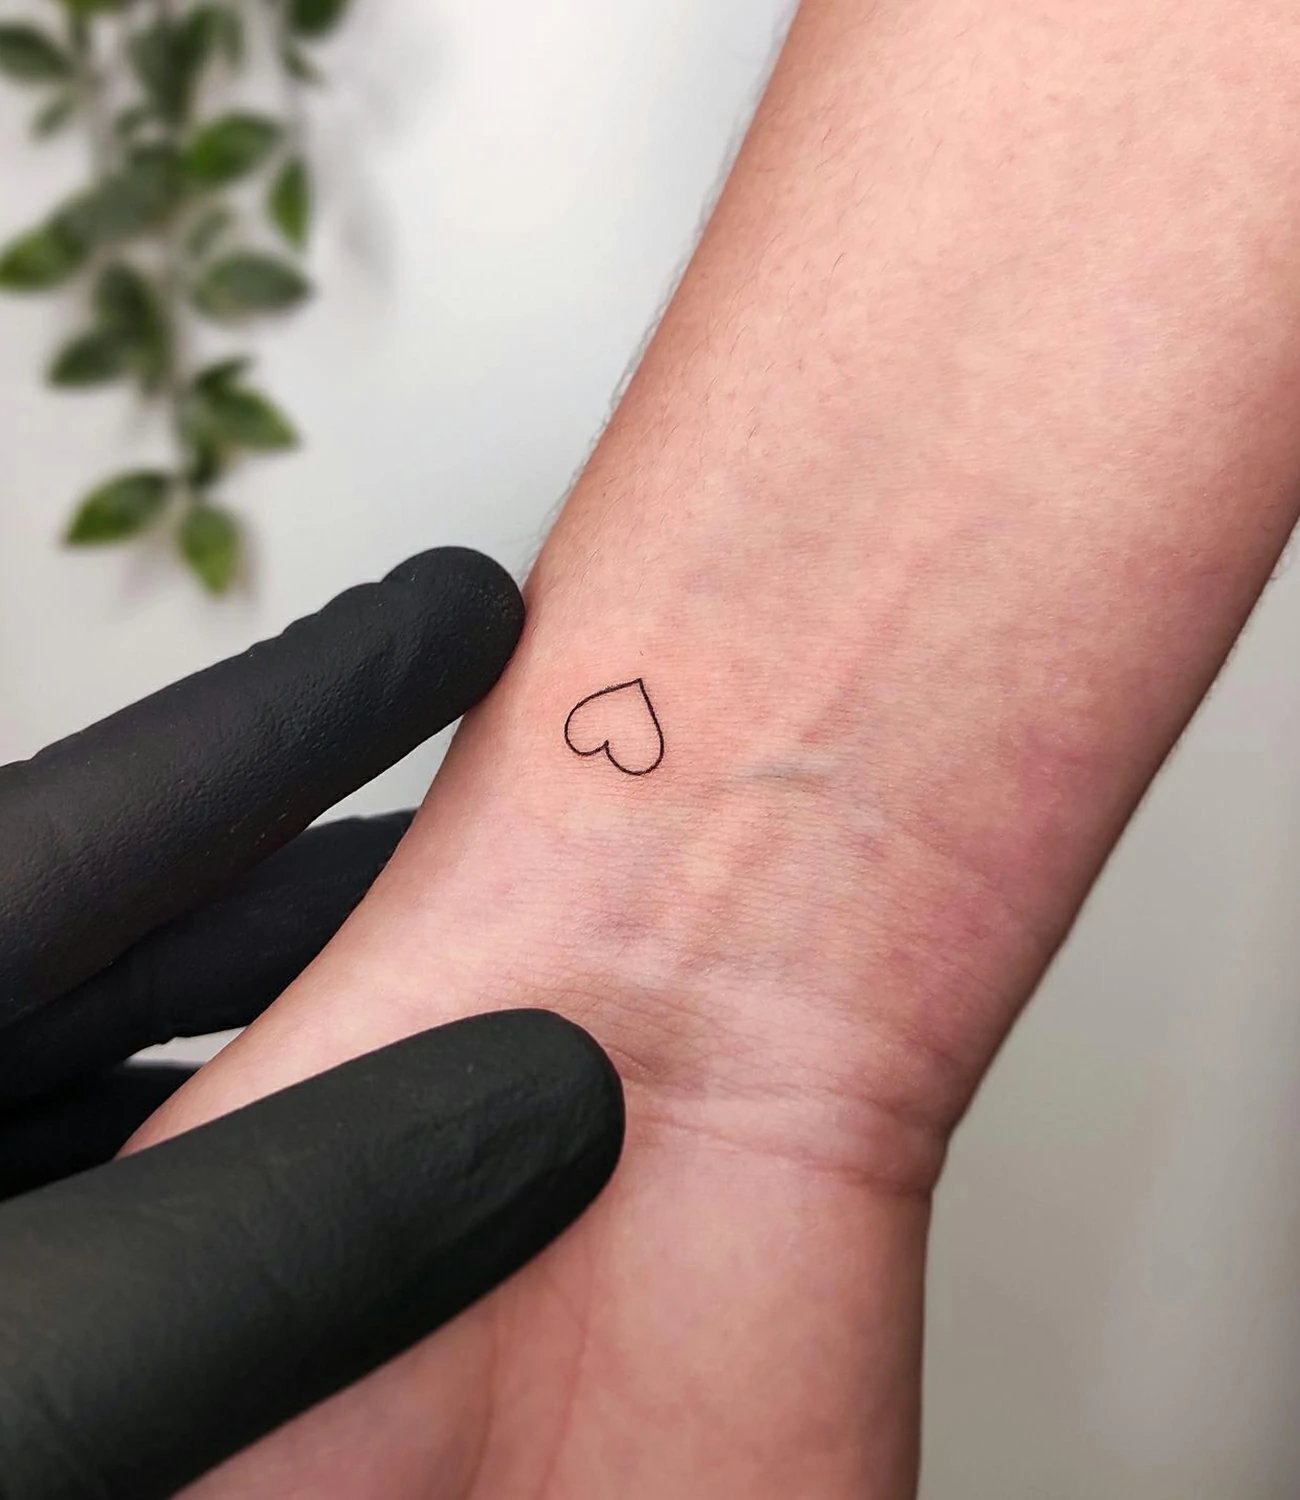 Heart Tattoo on Wrist